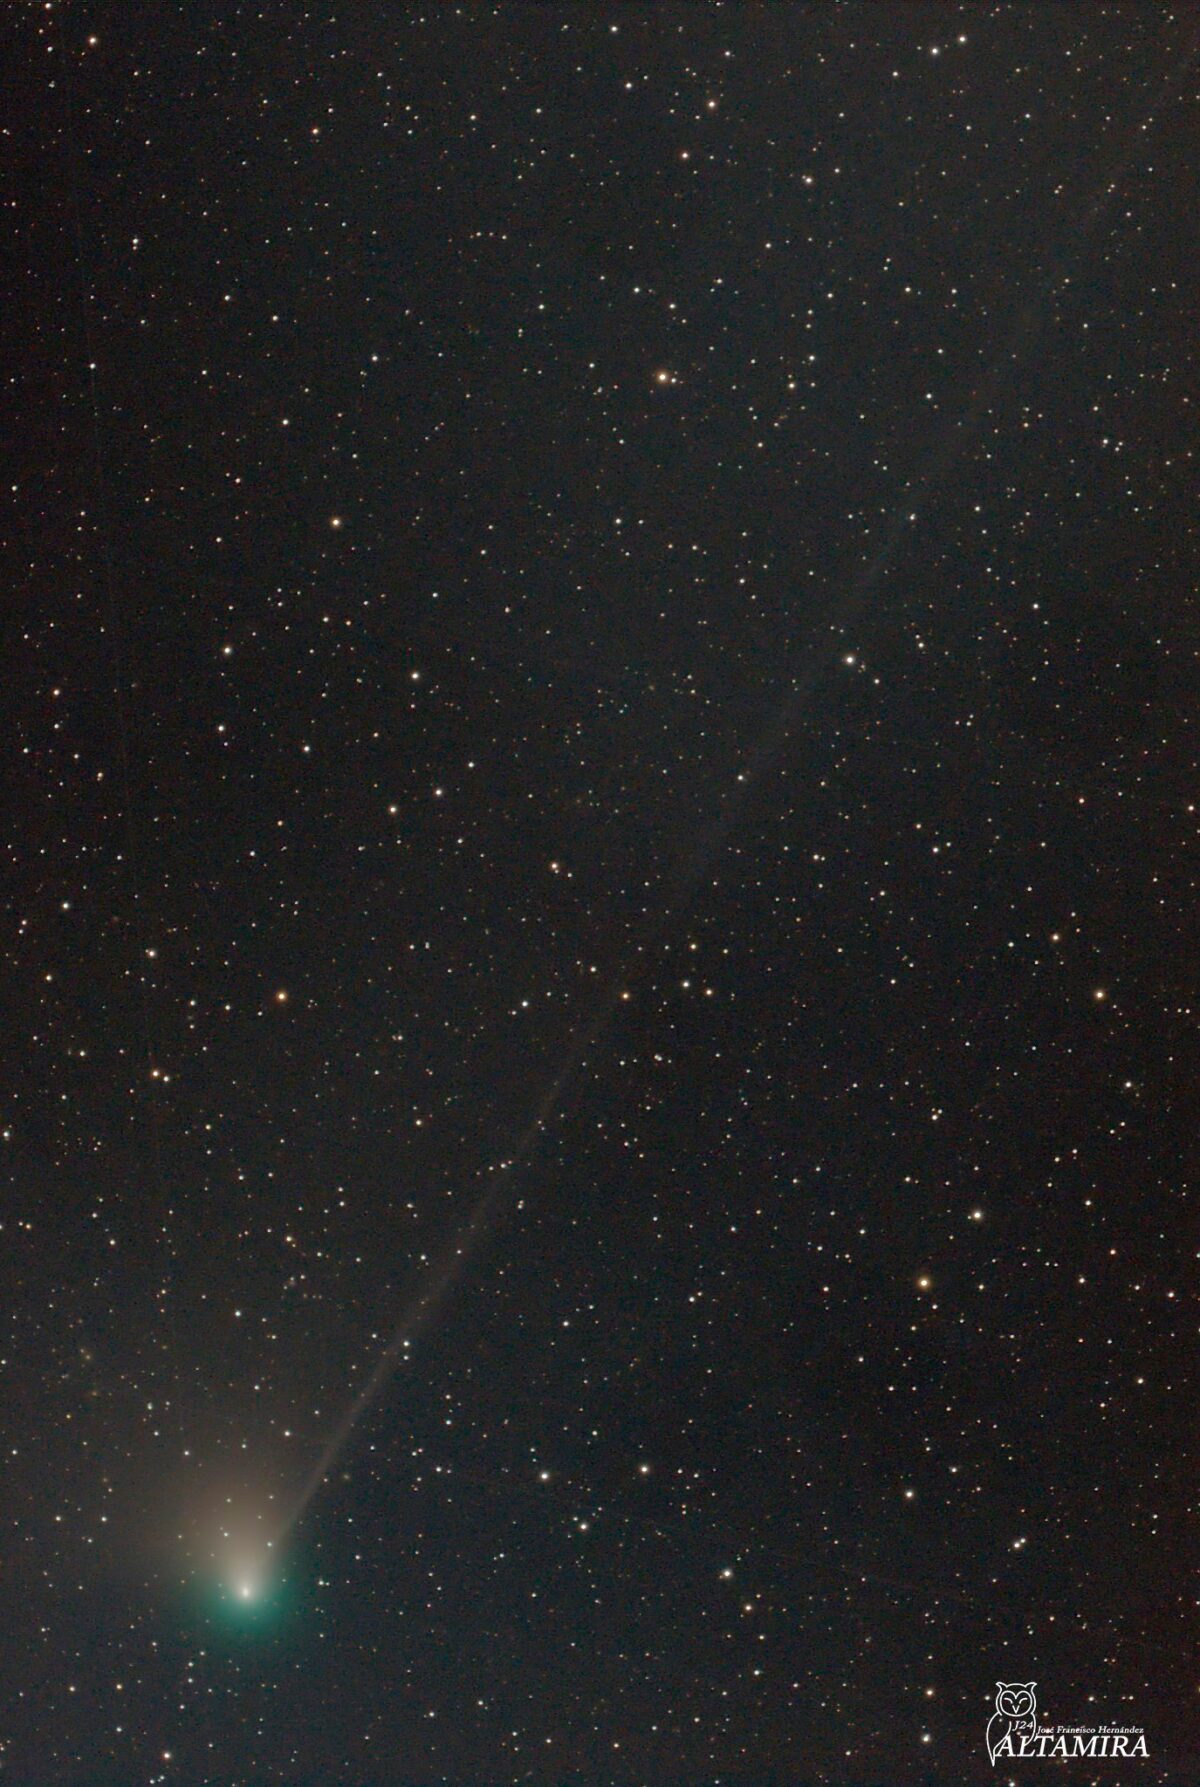 El cometa se vuelve más brillante a medida que avanza hacia el sol. (Cortesía de José Francisco Hernández )